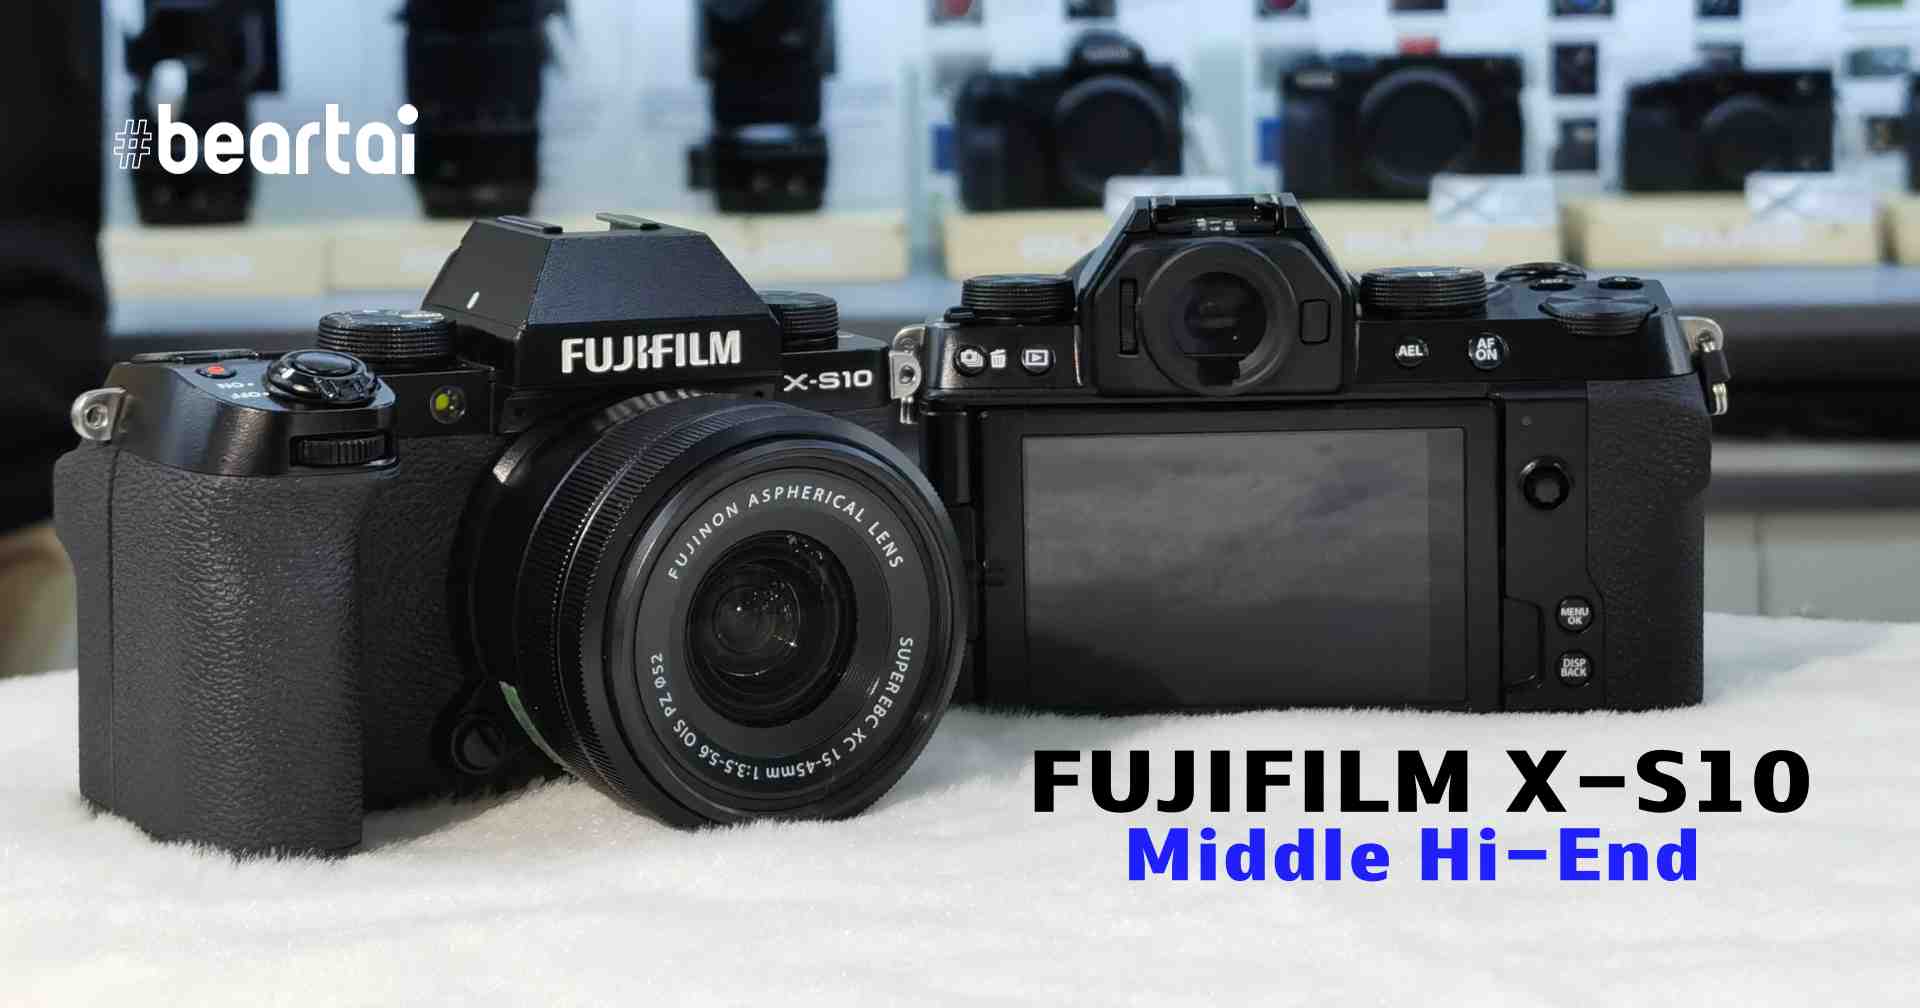 ส่องฟังก์ชันเทพกล้องระดับ Middle Hi-End FUJIFILM X-S10